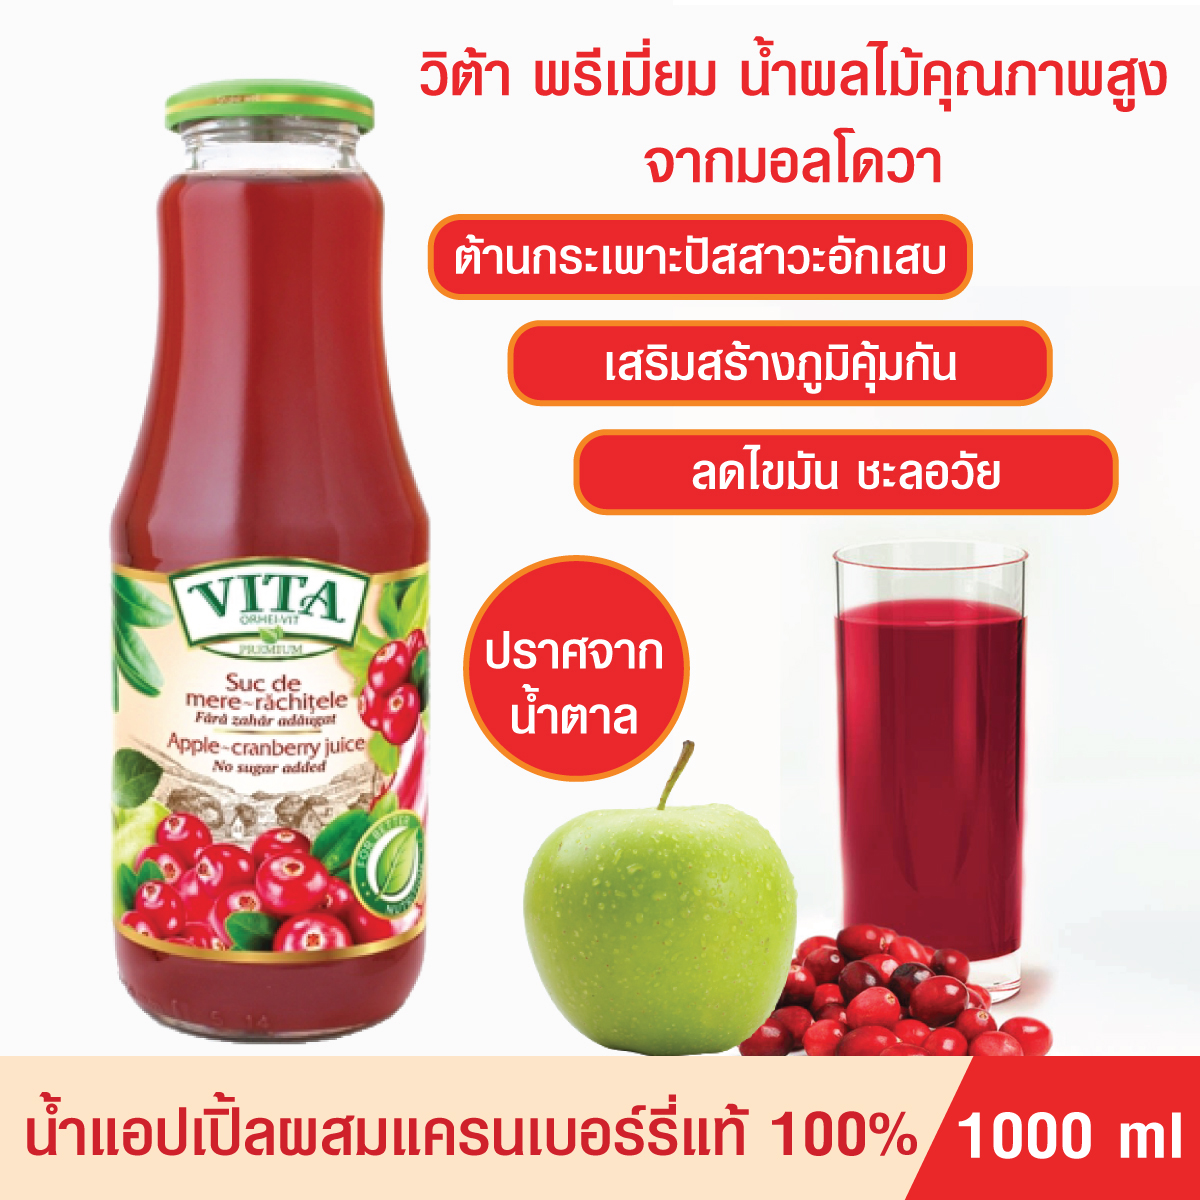 น้ำผลไม้รวม VITA ORHEI-VIT Apple cranberry Juice No sugar added 1000 mL น้ำแอปเปิ้ล ผสมแครนเบอร์รี่แท้ 100% ไม่มีน้ำตาล ต้านกระเพาะปัสสาวะอักเสบ เสริมภูมิคุ้มกัน